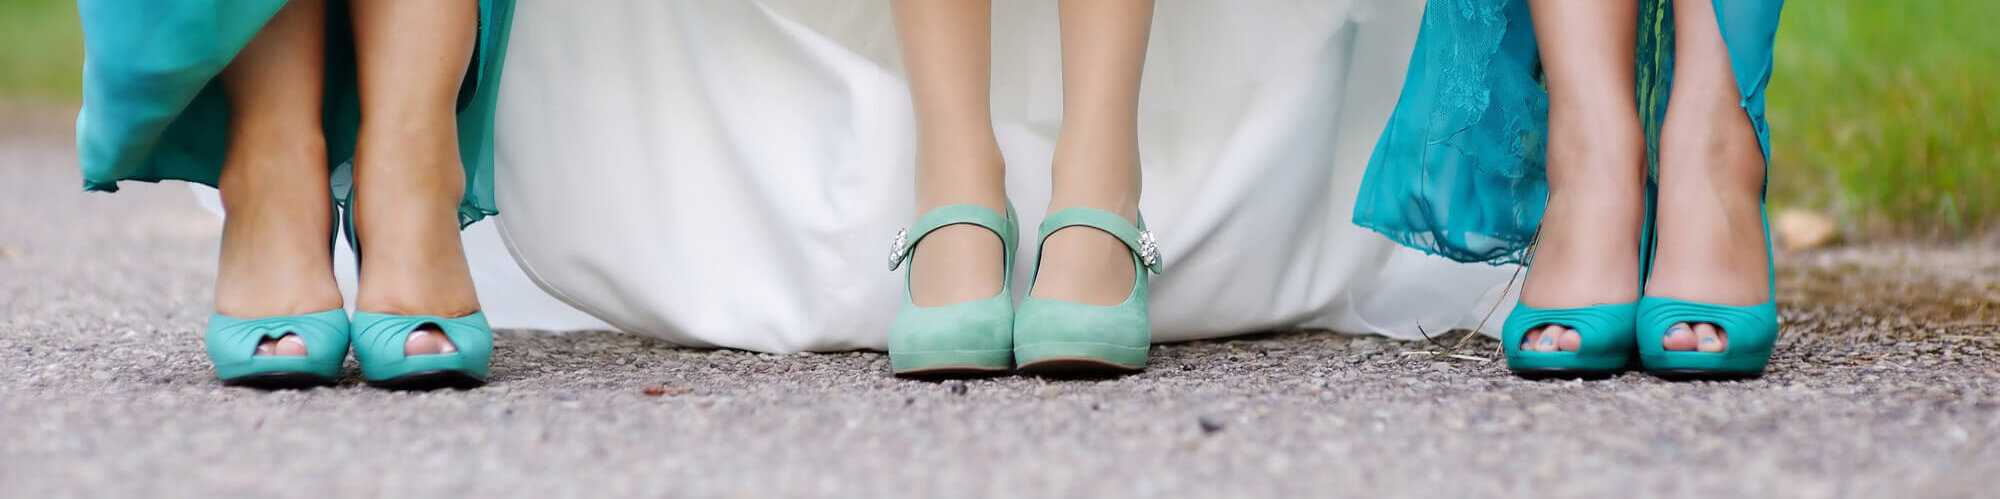 Türkise Schuhe der Braut und Brautjungfern